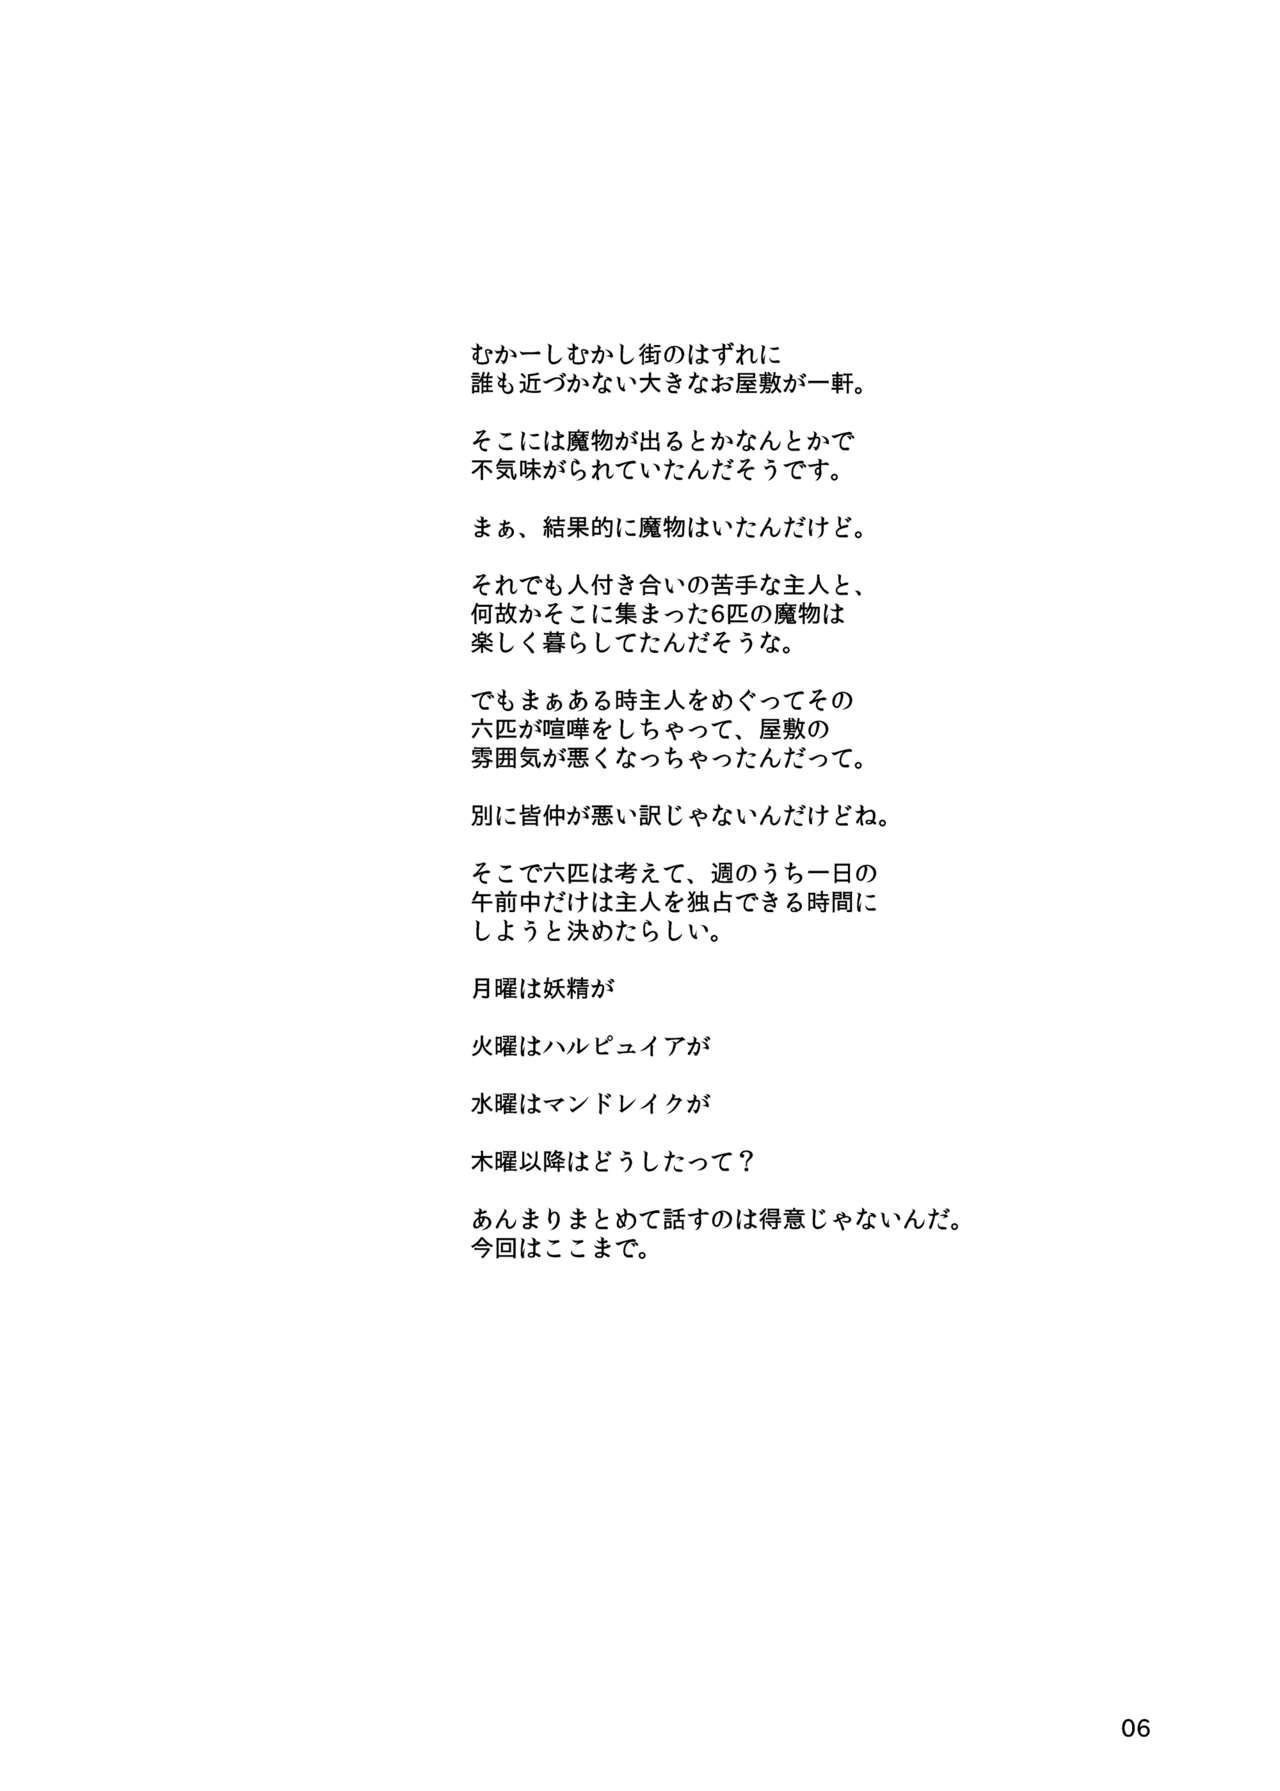 De Quatro Jingai Shoujo to no Asa - Original Magrinha - Page 3